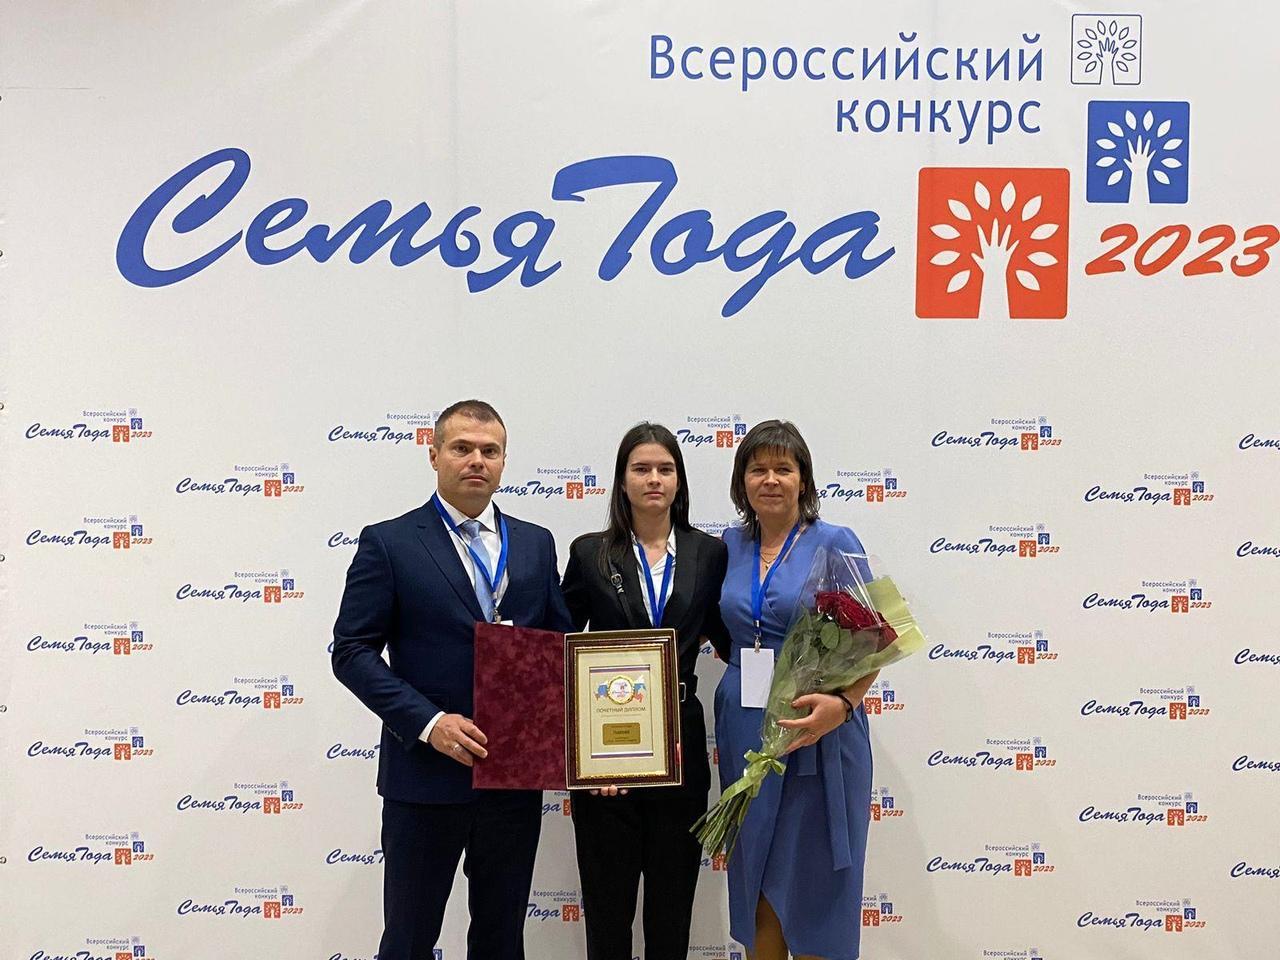 В Москве наградили супругов Гуменюк - победителей Всероссийского конкурса «Семья года».